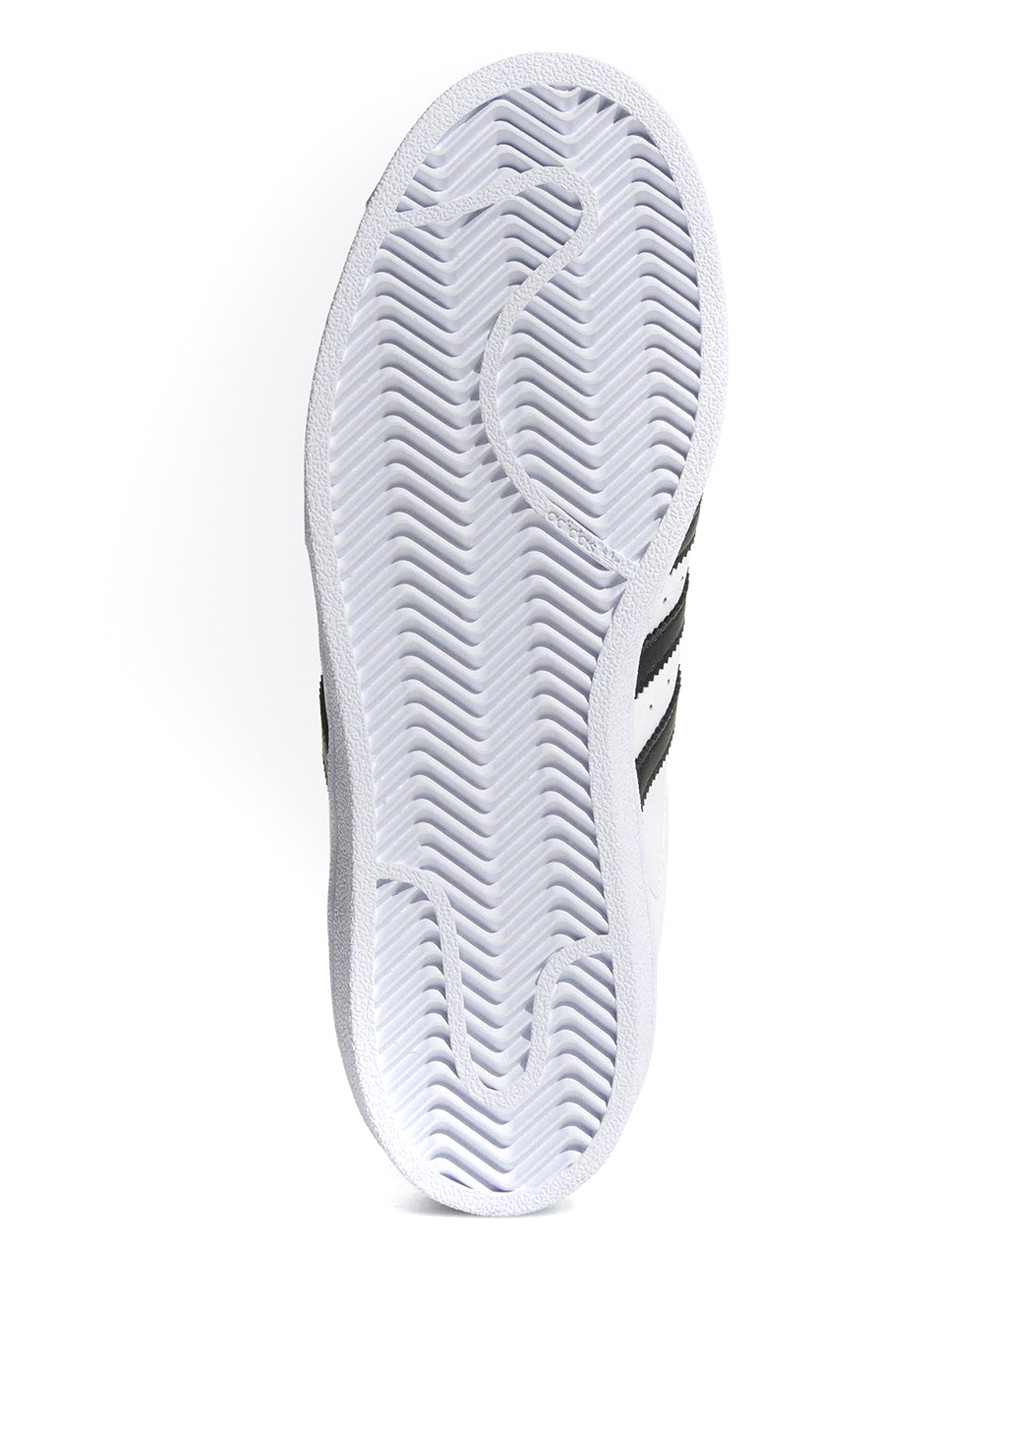 Белые демисезонные кроссовки adidas Superstar